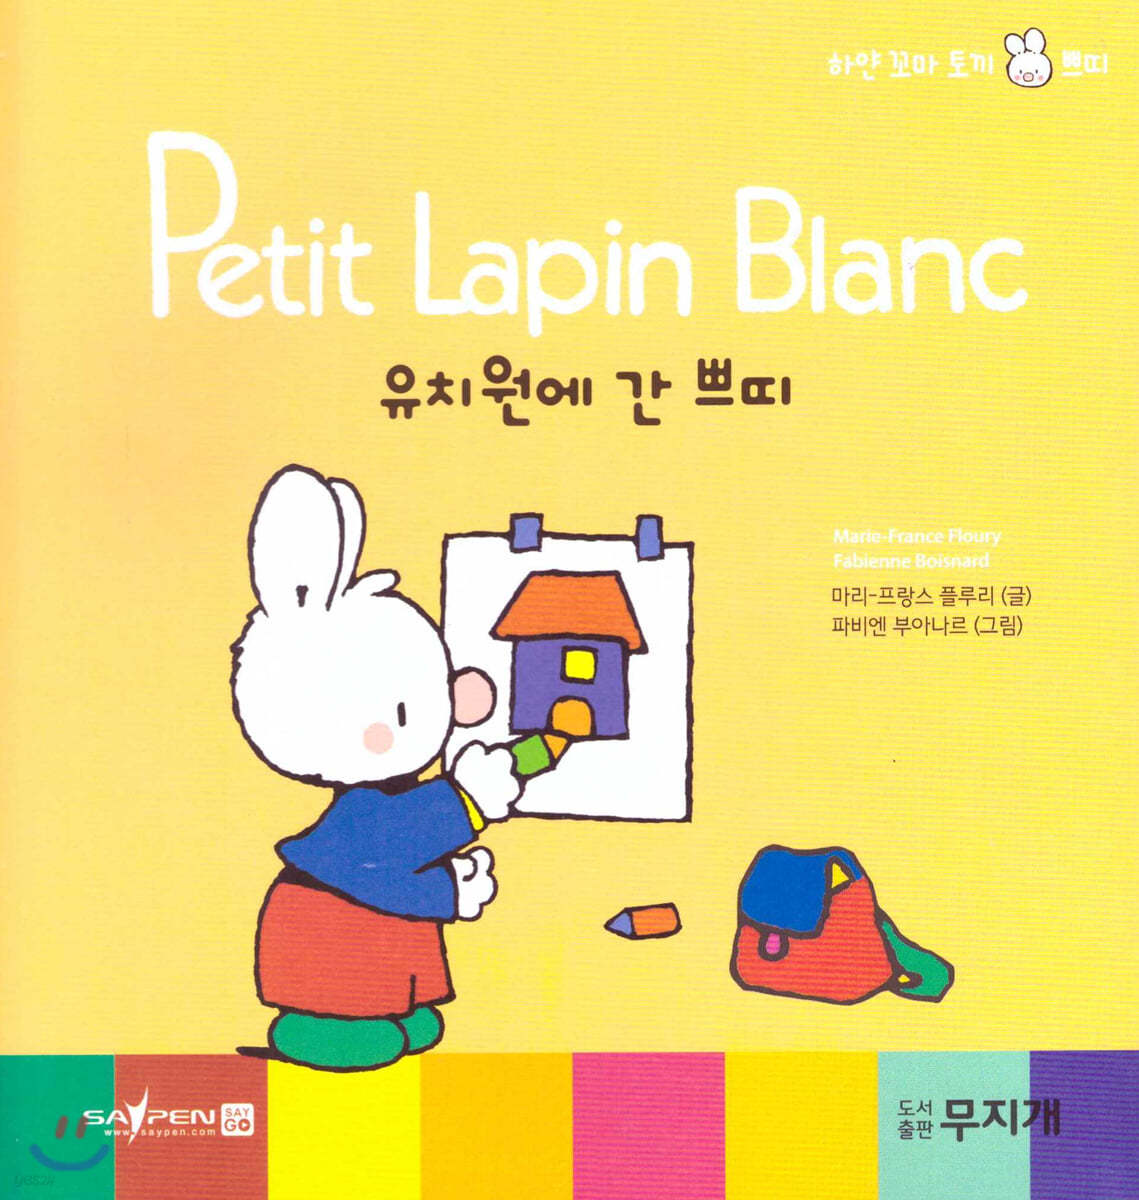 Petit Lapin Blanc 하얀 꼬마 토끼 쁘띠 03 유치원에 간 쁘띠